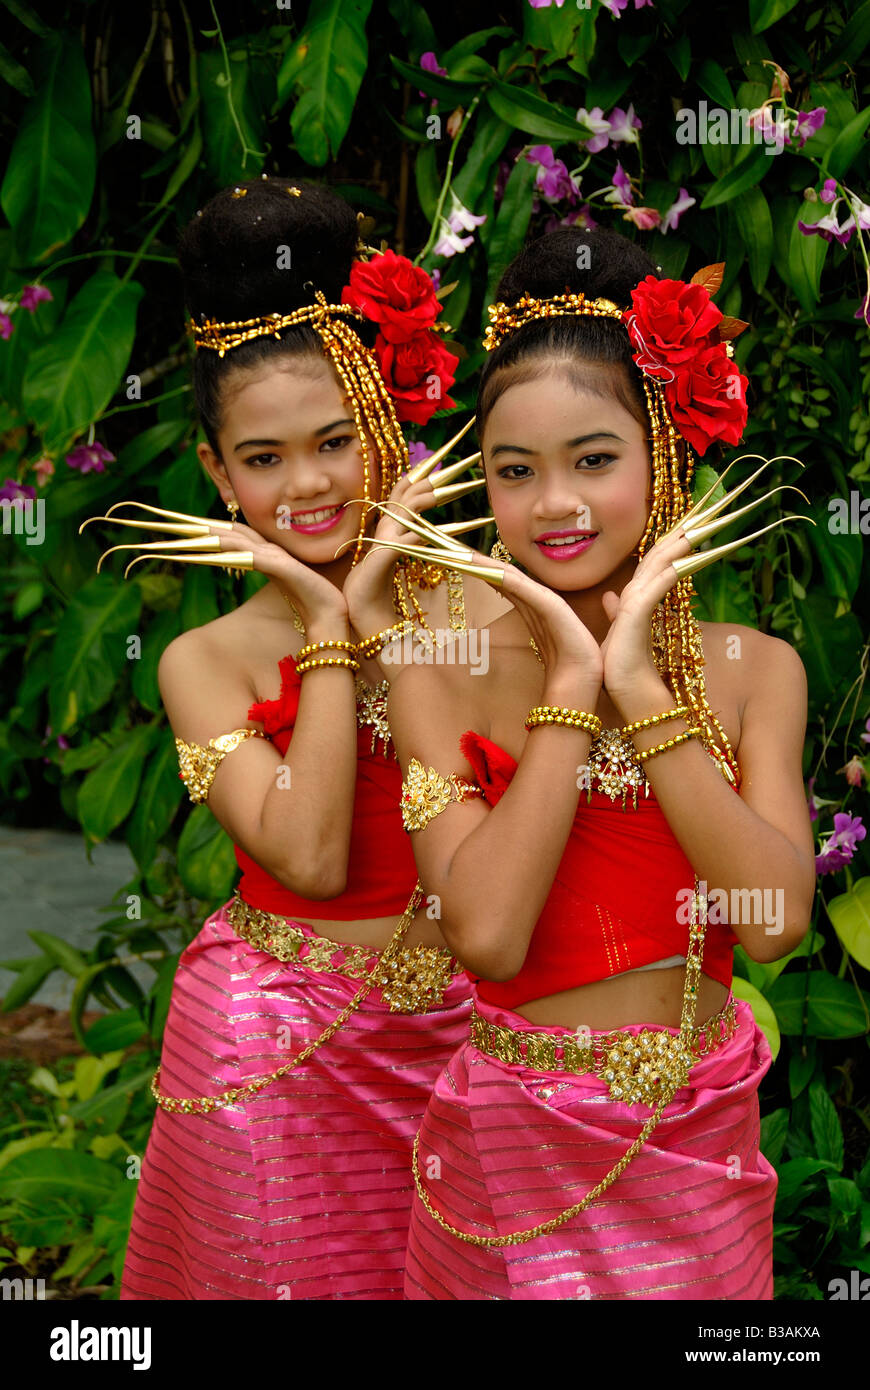 Danseurs thaïlandais Thaïlande Bangkok les jeunes filles danser ongle robe traditionnelle thaïlandaise en Asie. Deux voyage rouge dessss girl smiling Banque D'Images